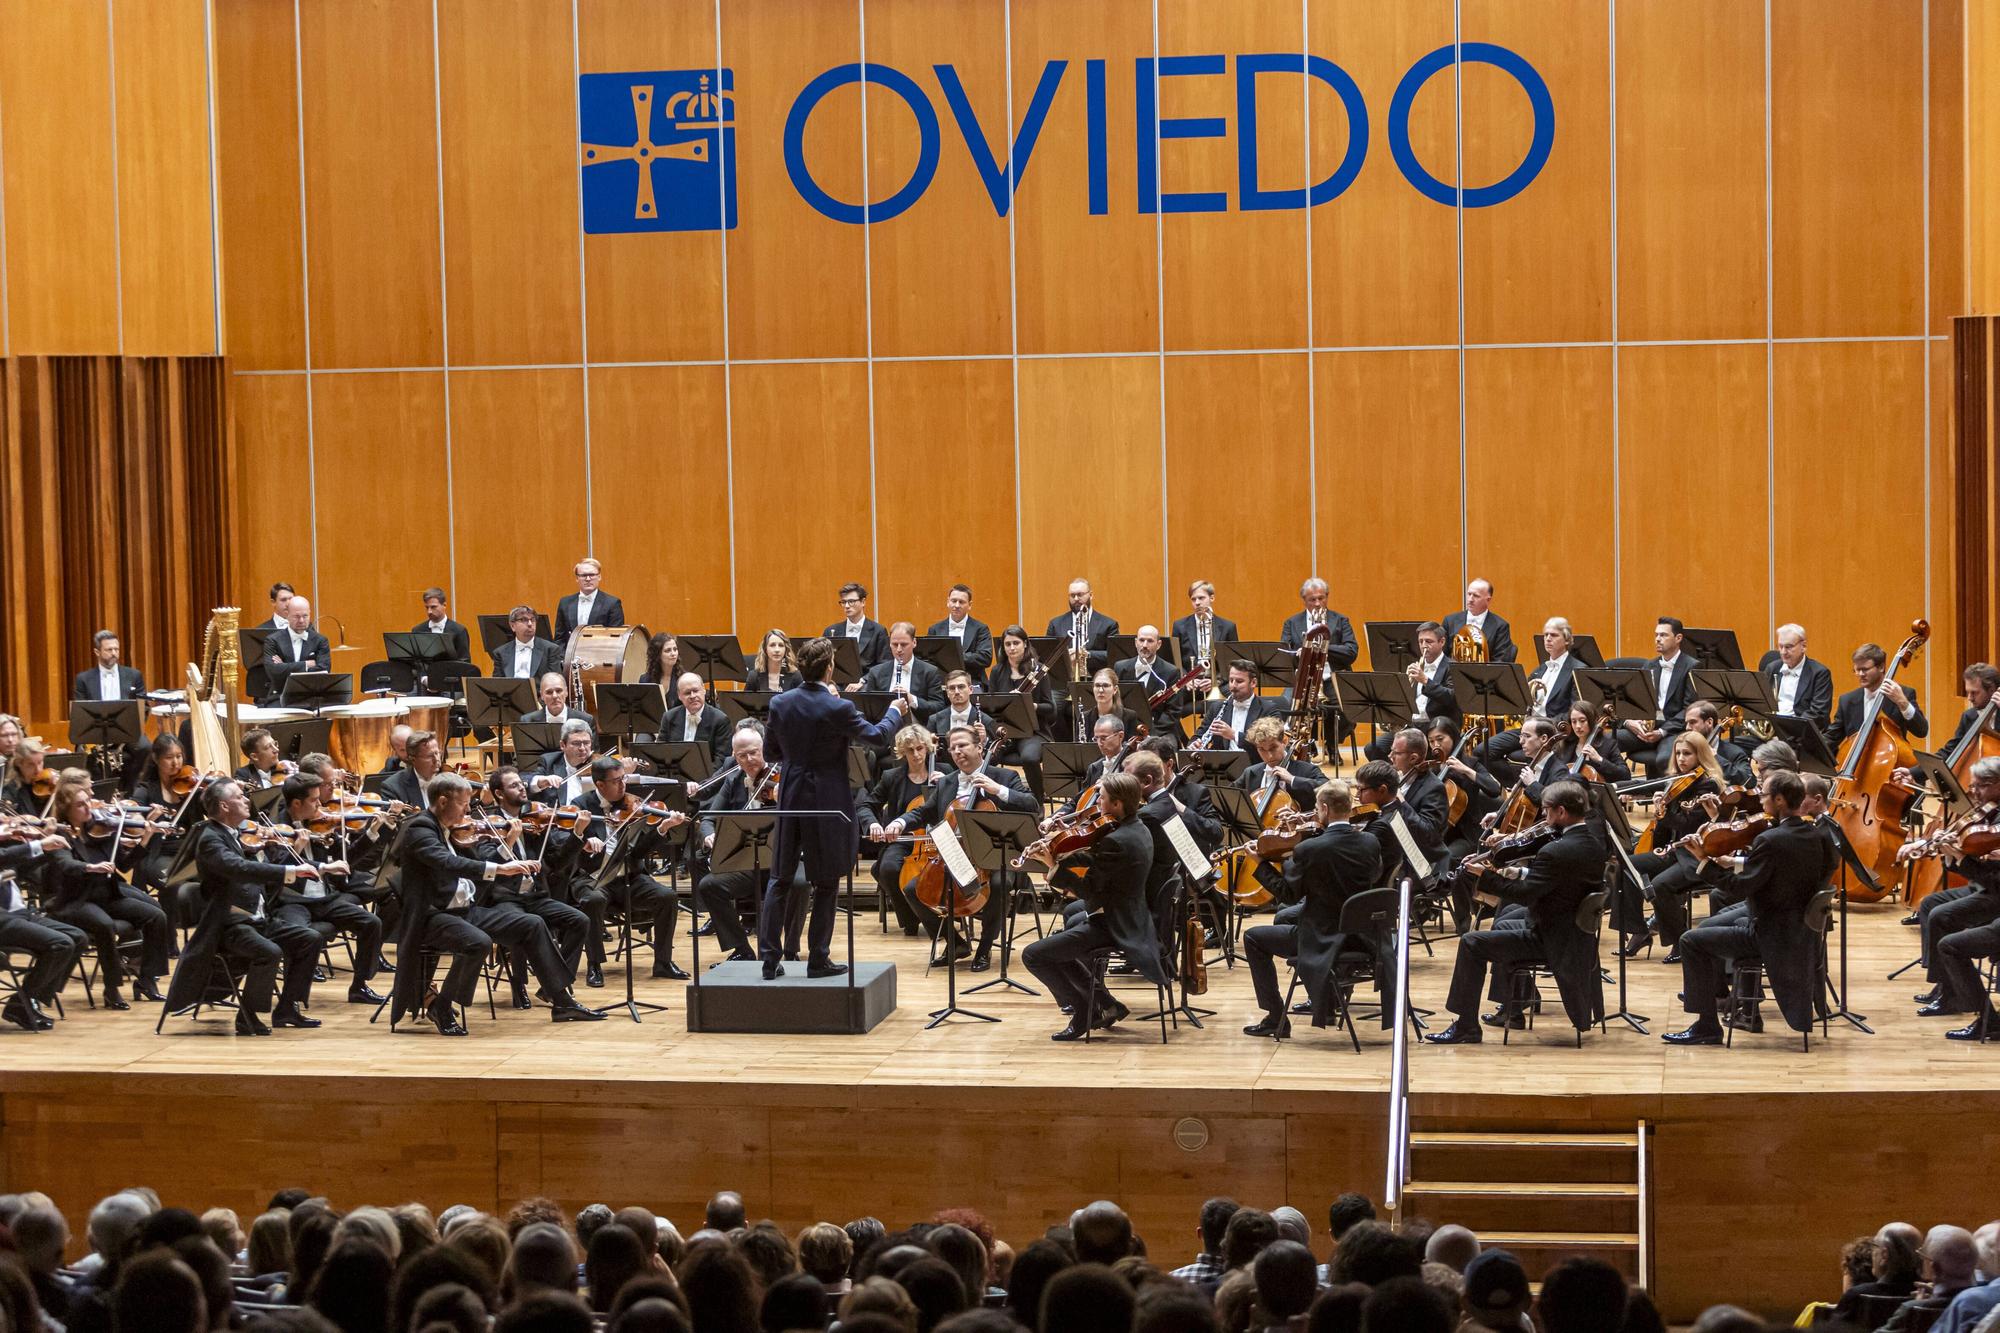 EN IMÁGENES: así fue el concierto de la Orquesta Filarmónica de Viena en Oviedo